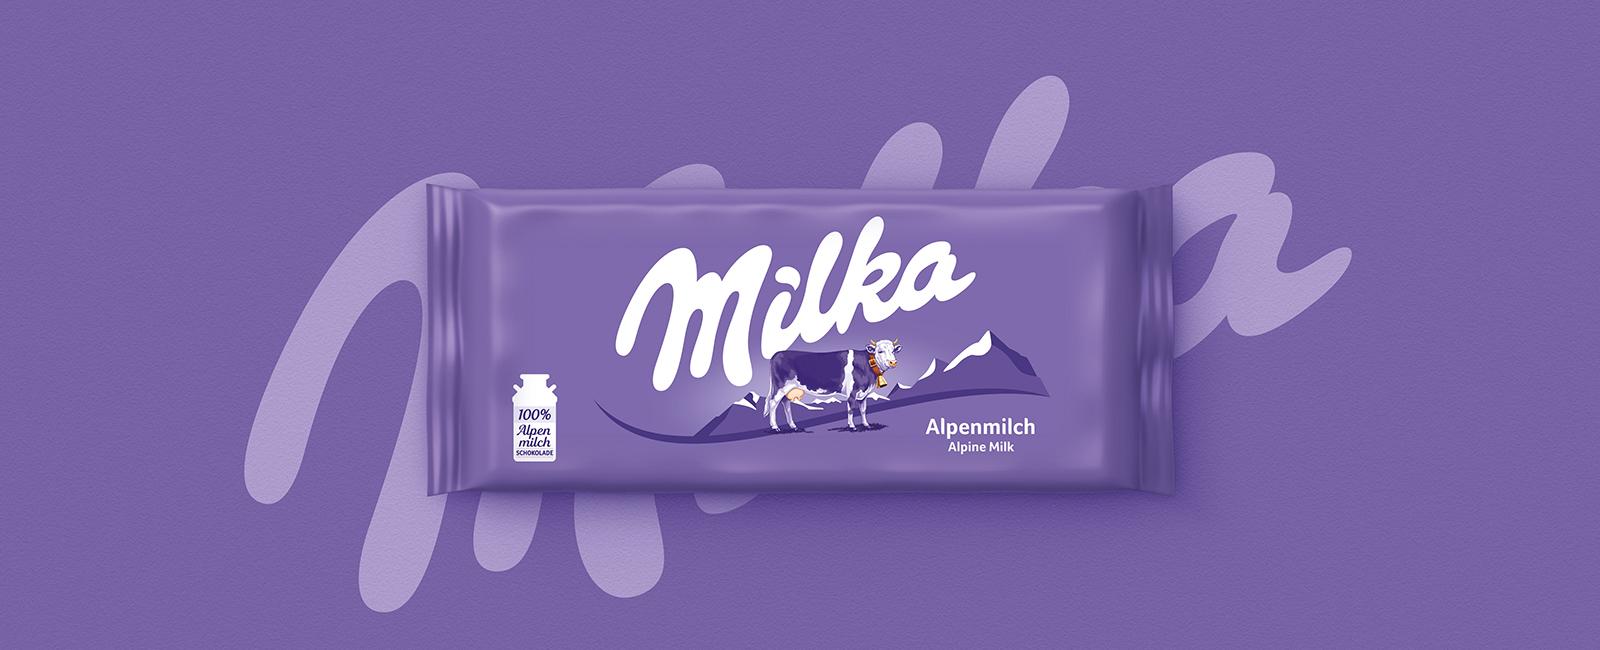 Milka Logo - Chocolate Brand Milka Unwraps a New Global Identity | LPK